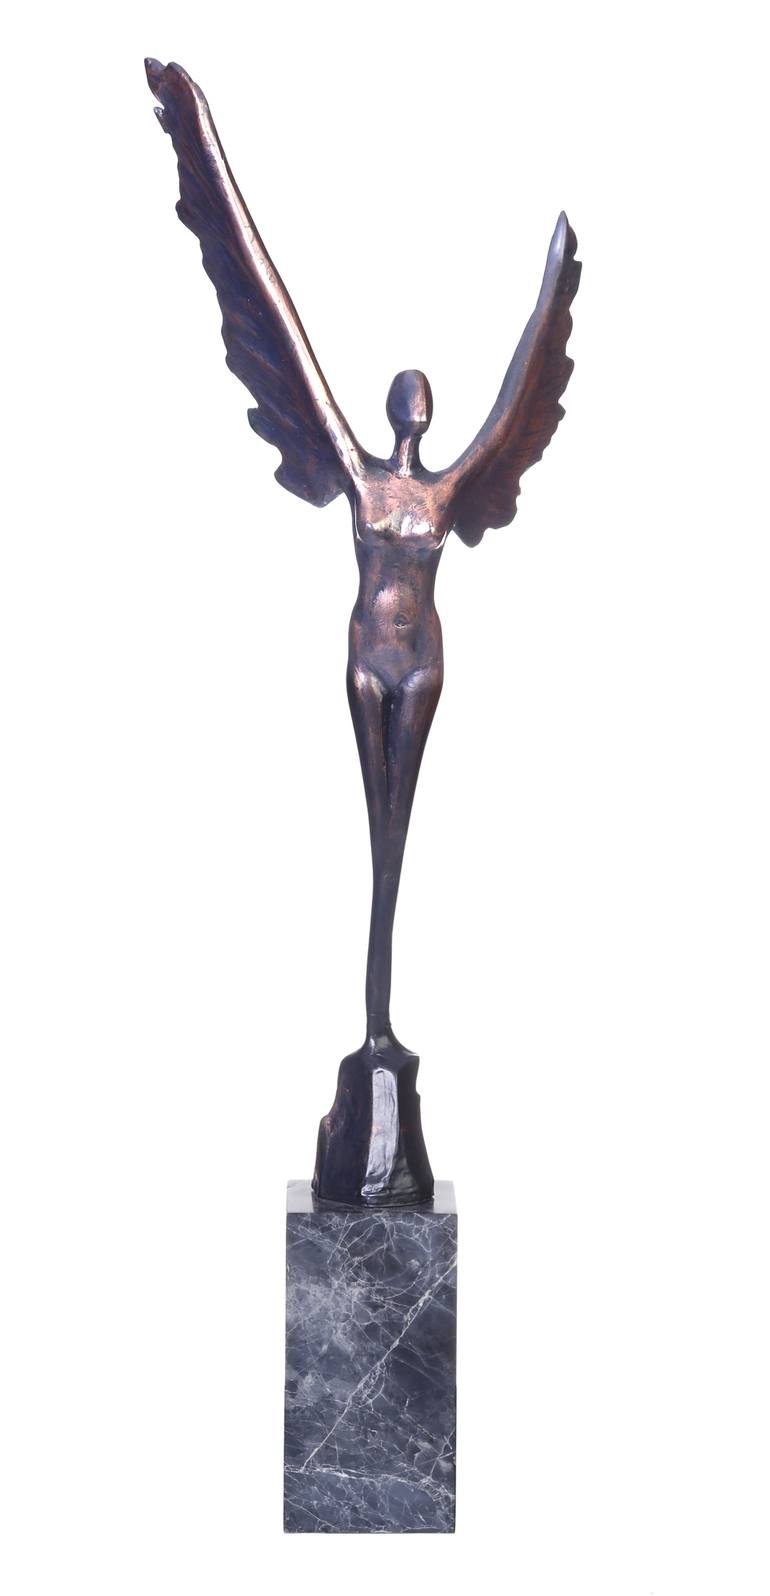 Original Body Sculpture by Seda Eyuboglu